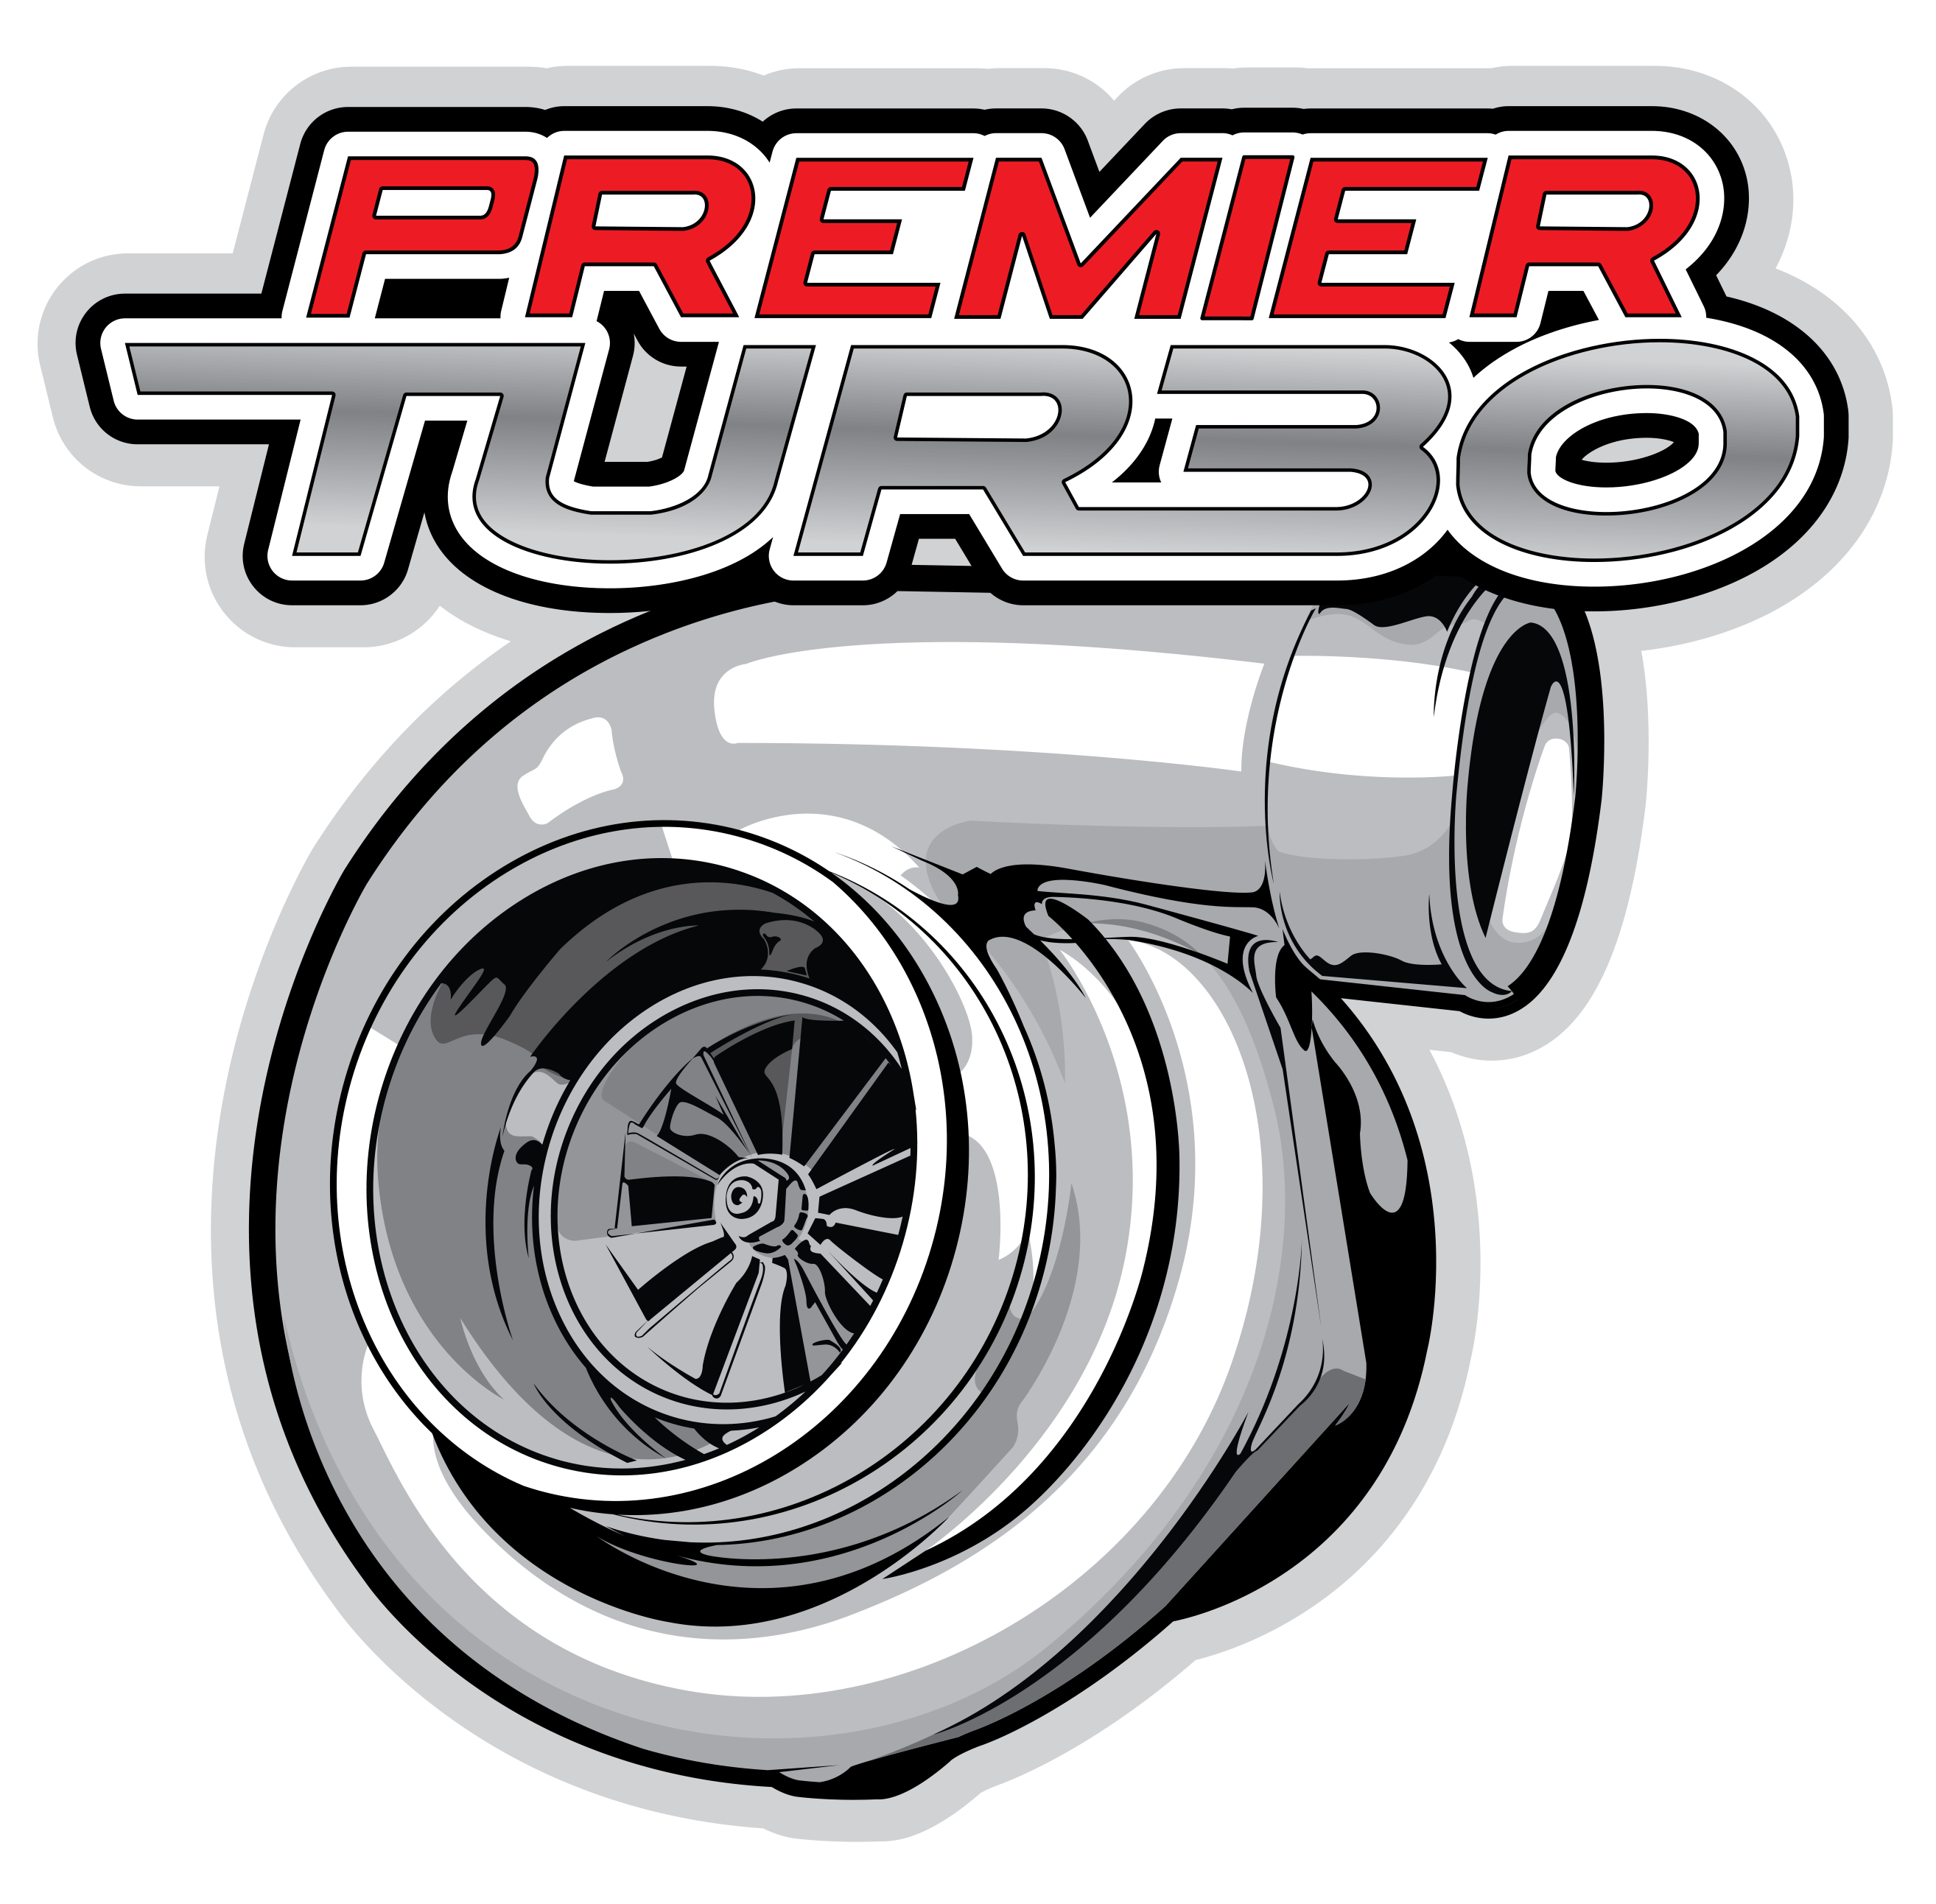 Premier Turbo